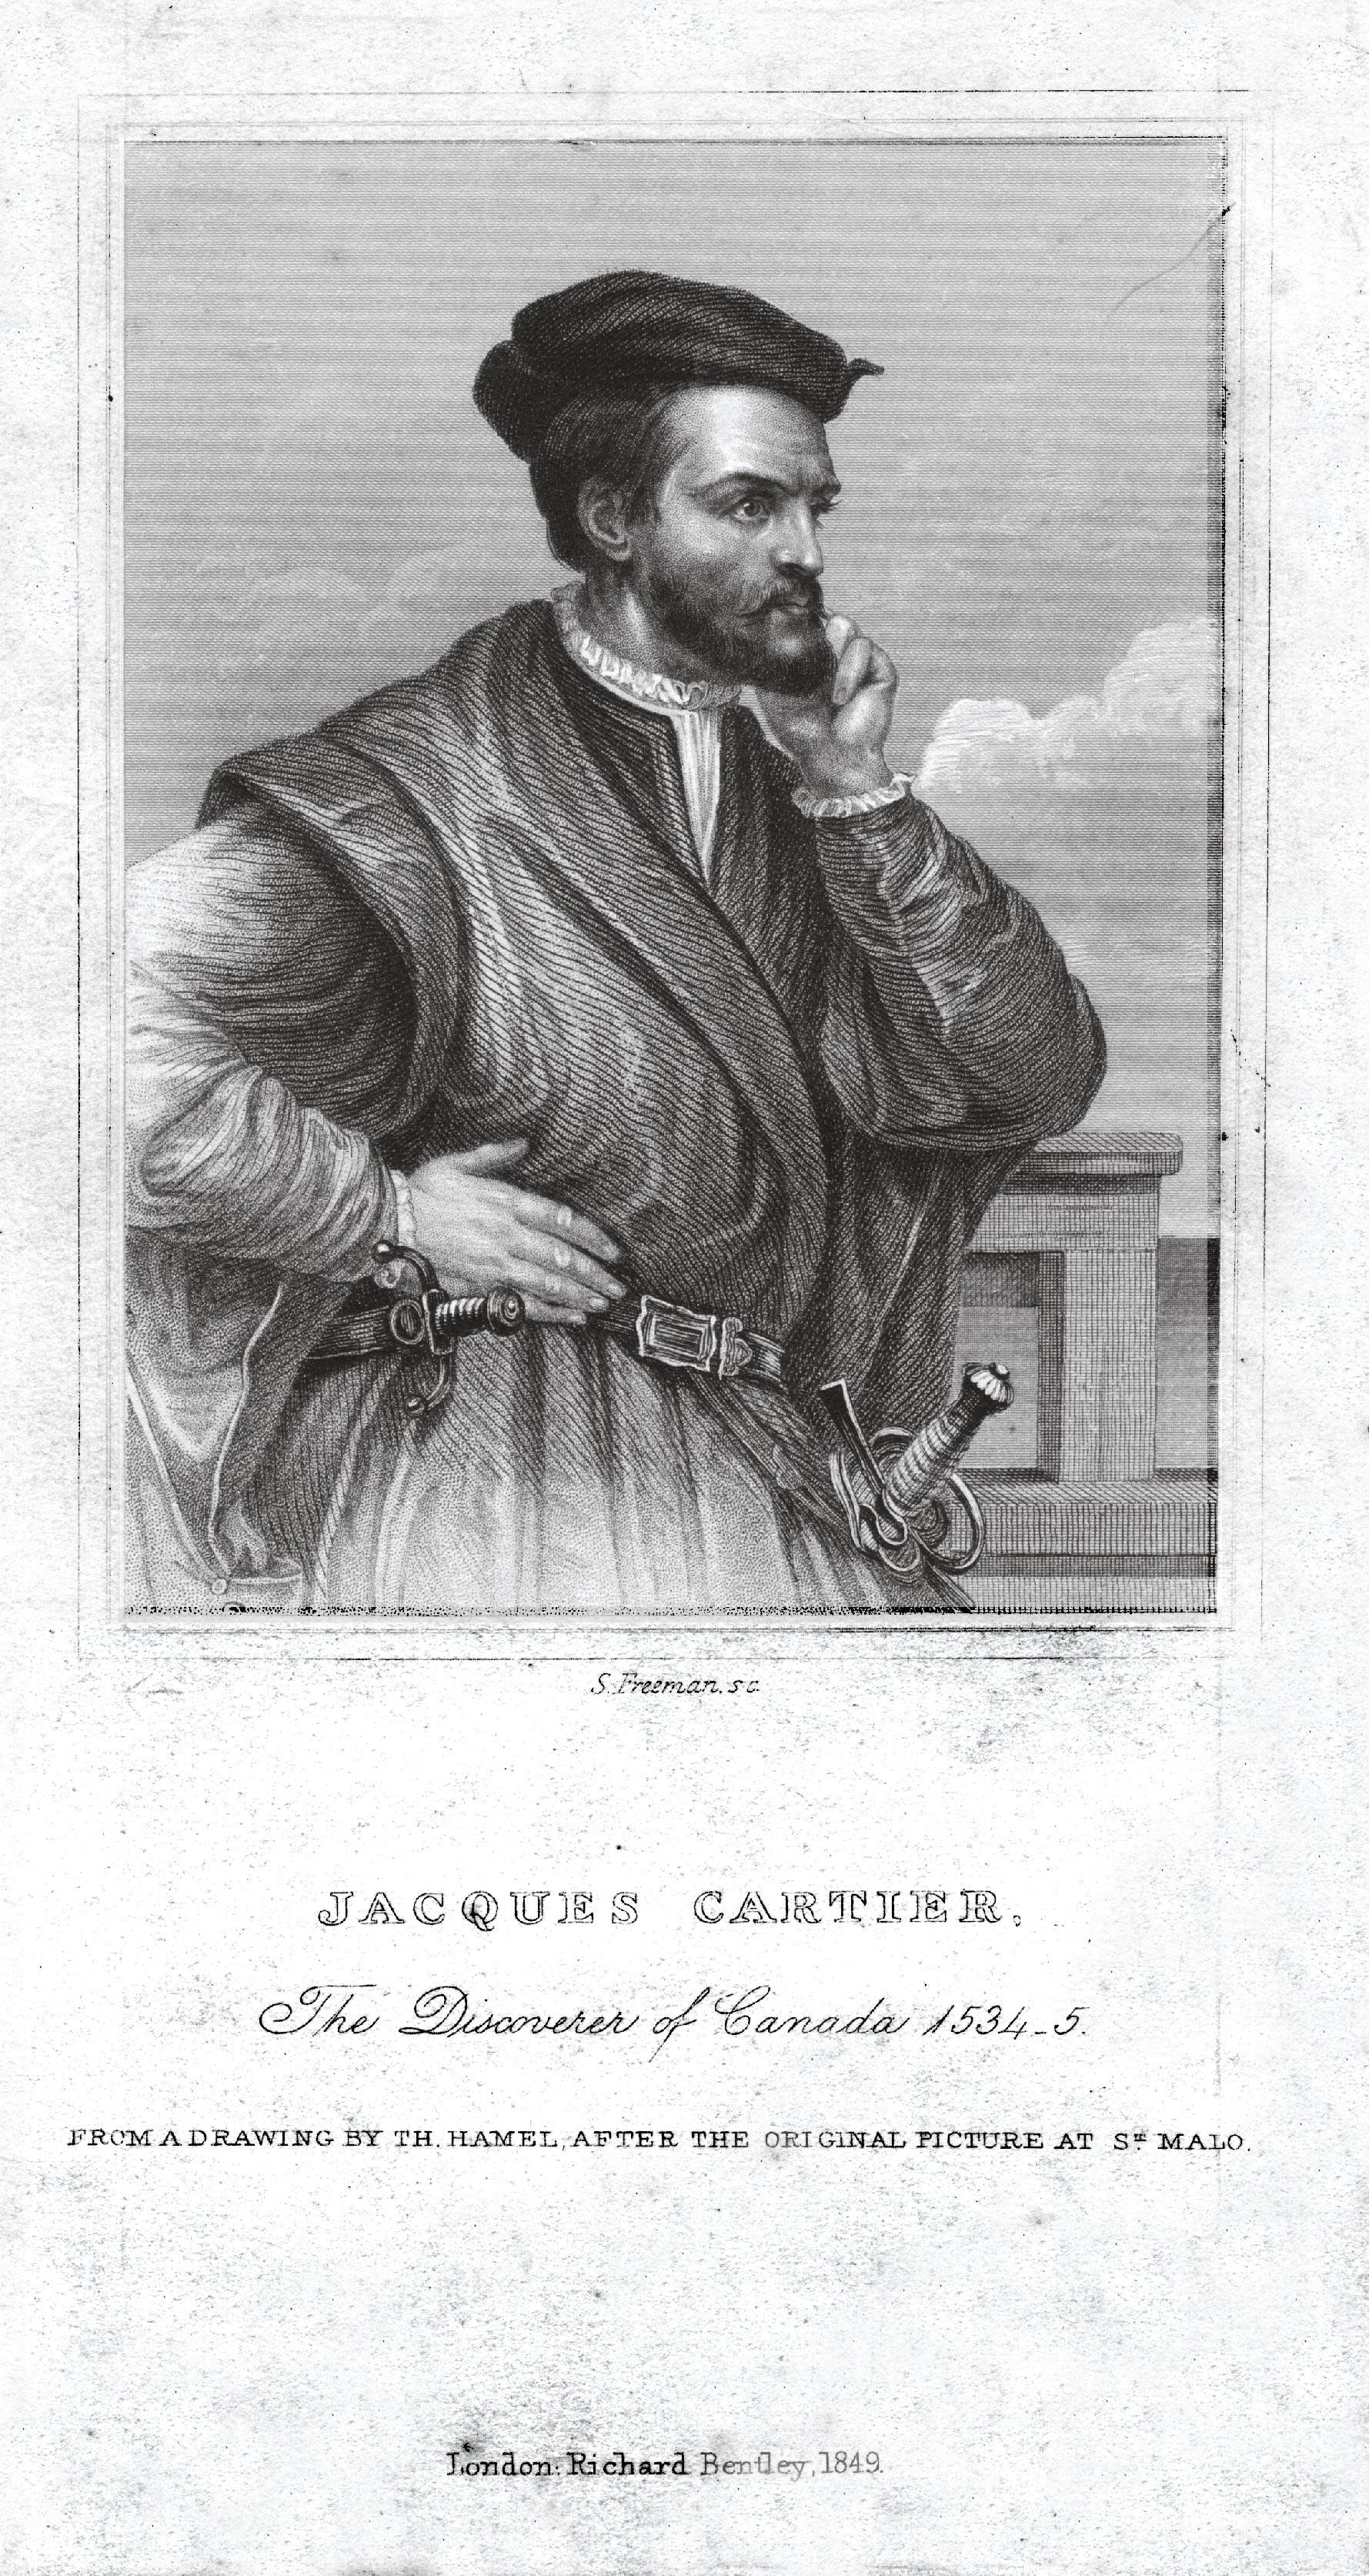 JACQUES CARTIER